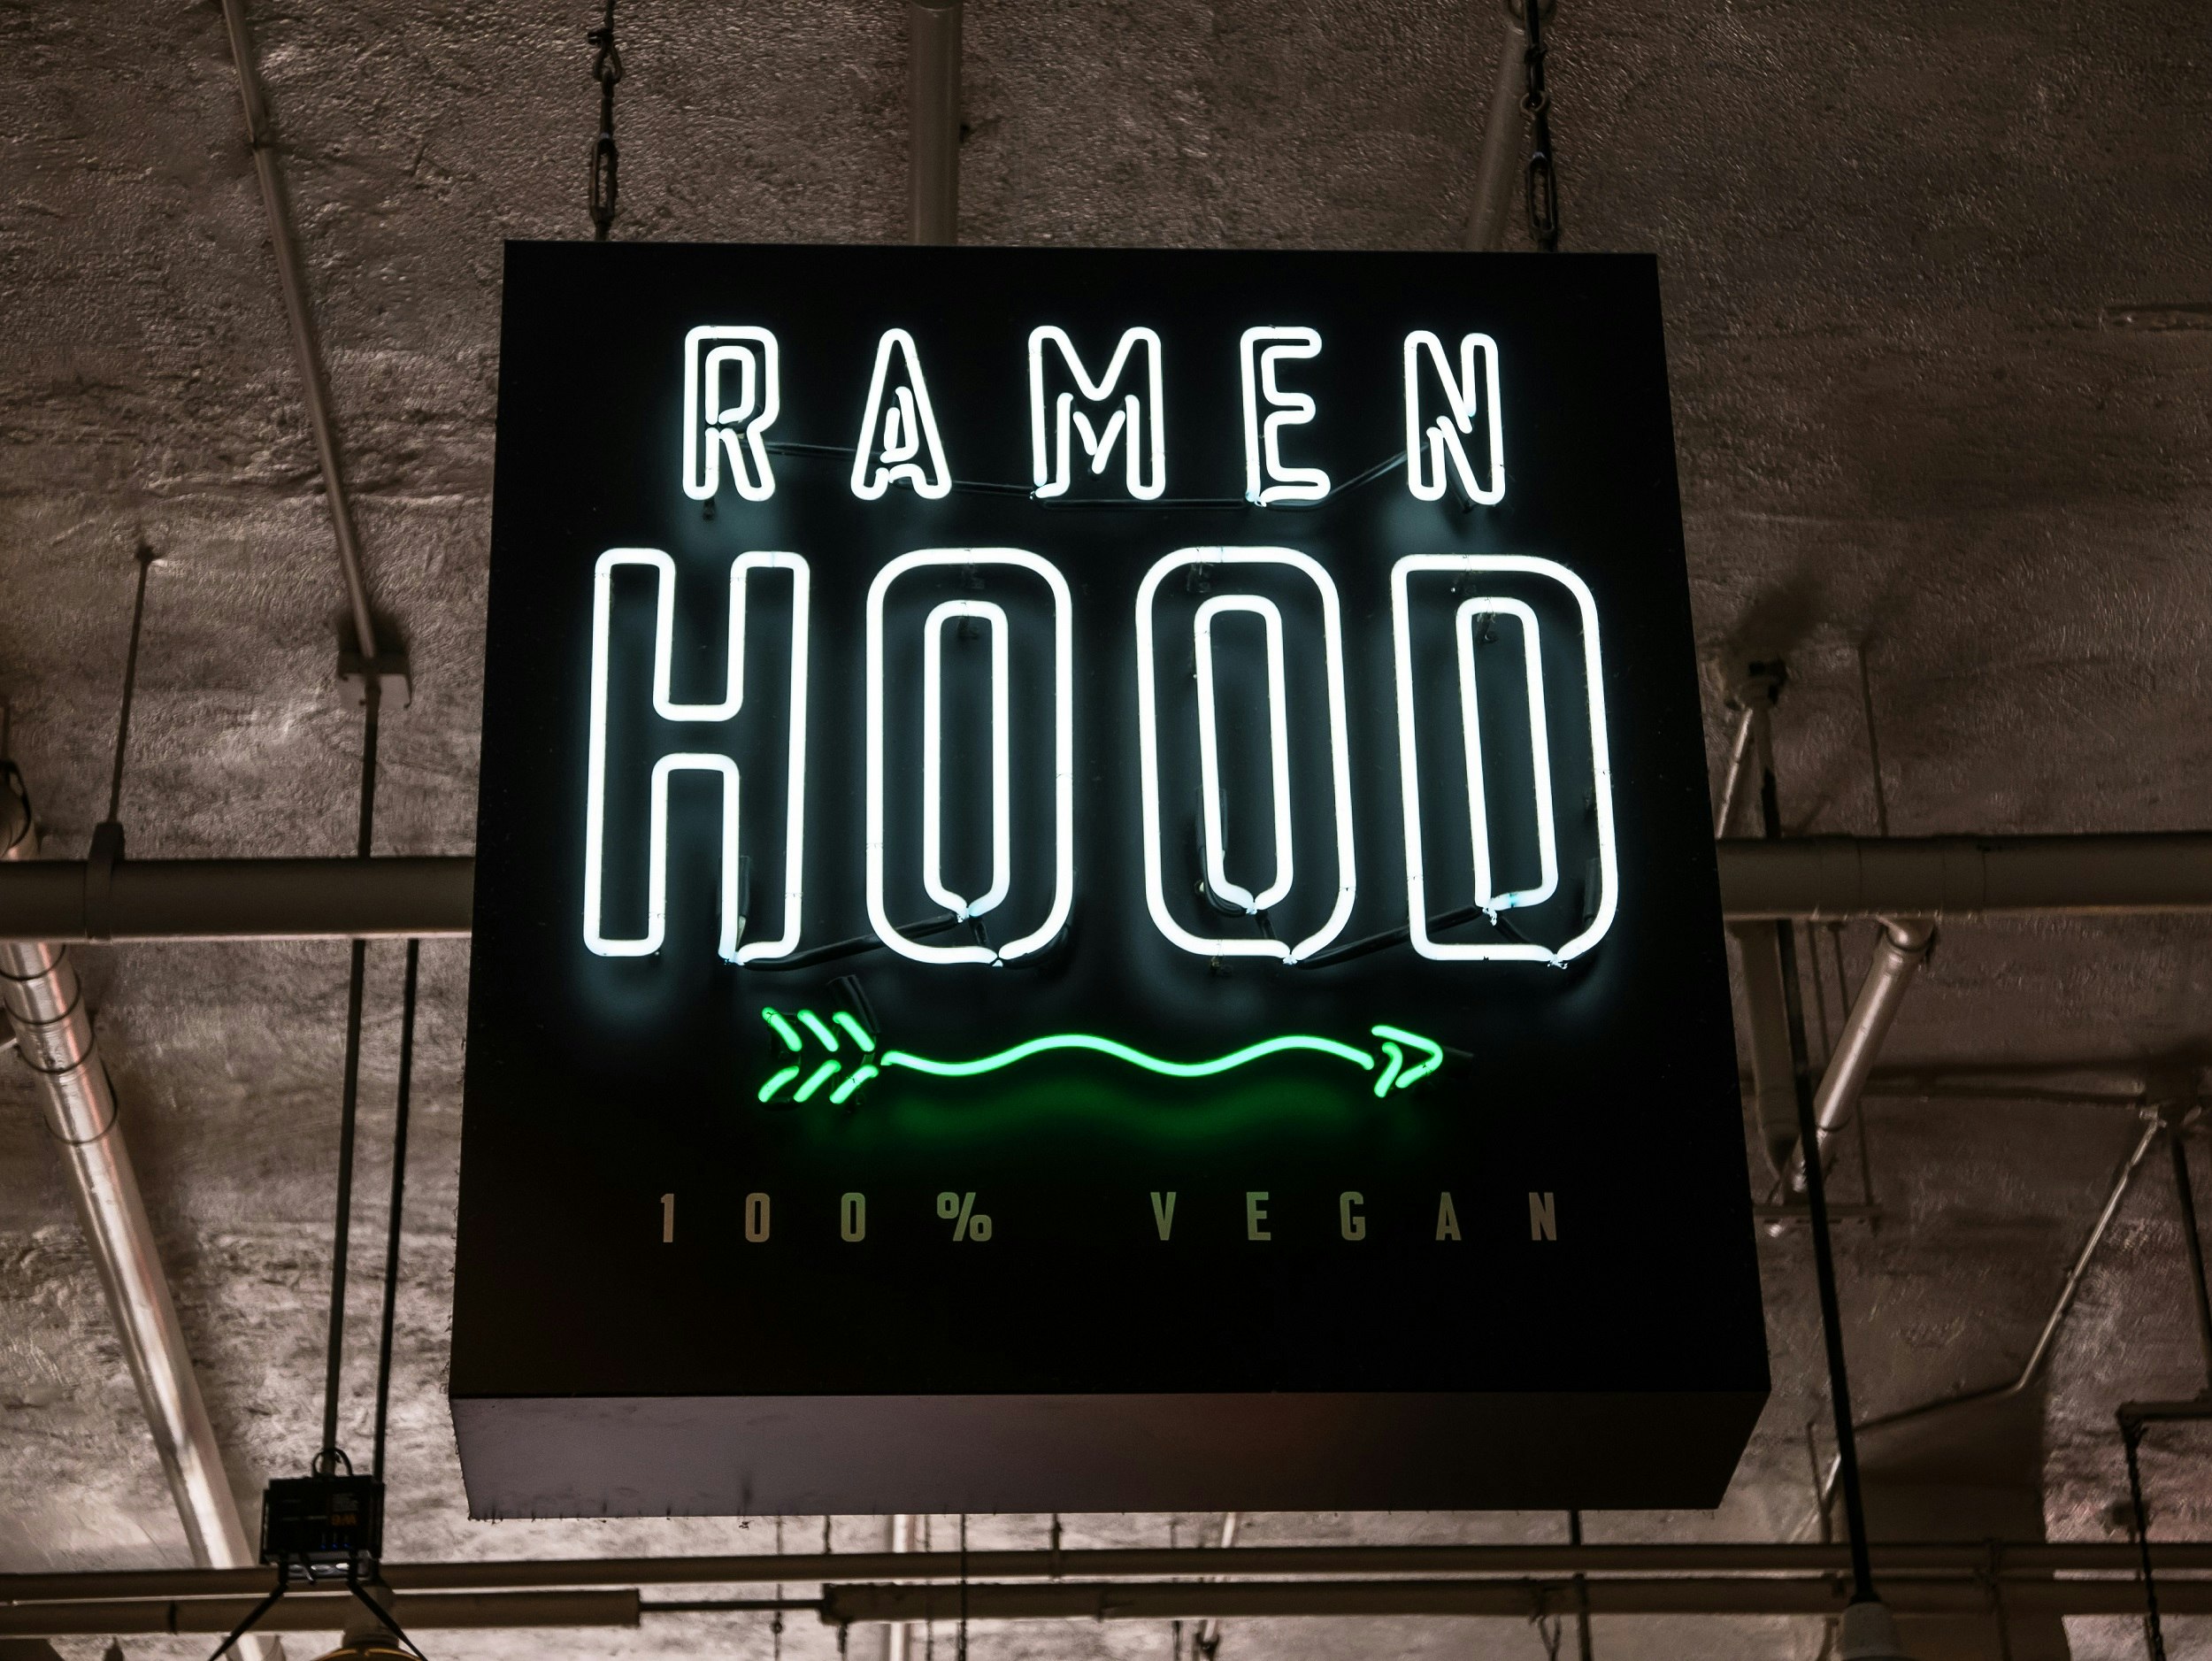 A neon sign for Ramen Hood, 100% Vegan restaurant, hangs outside the premises.